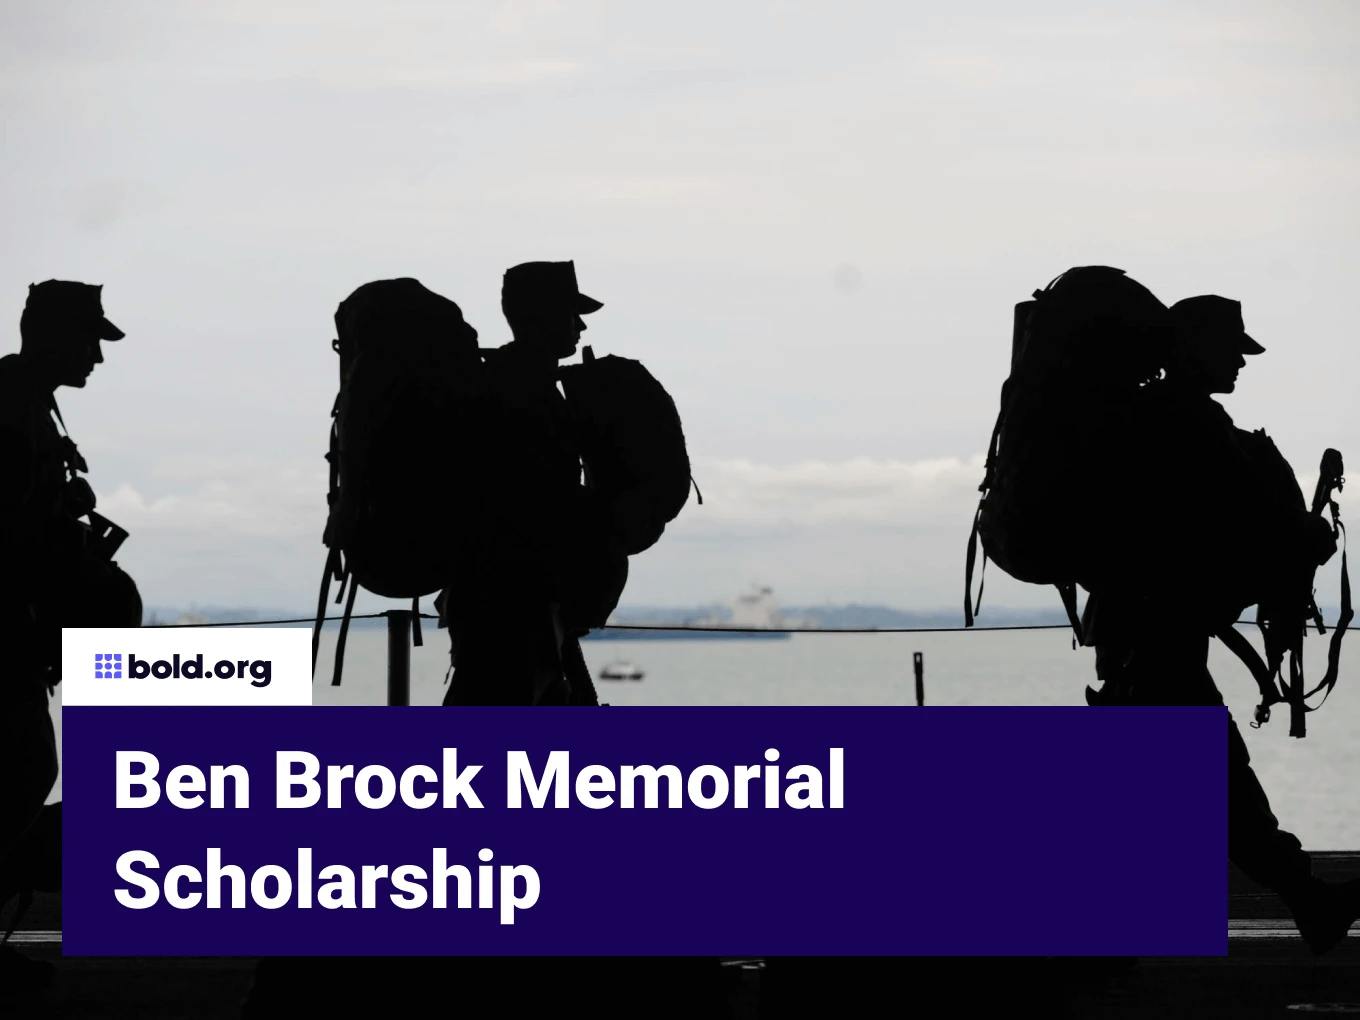 Ben Brock Memorial Scholarship